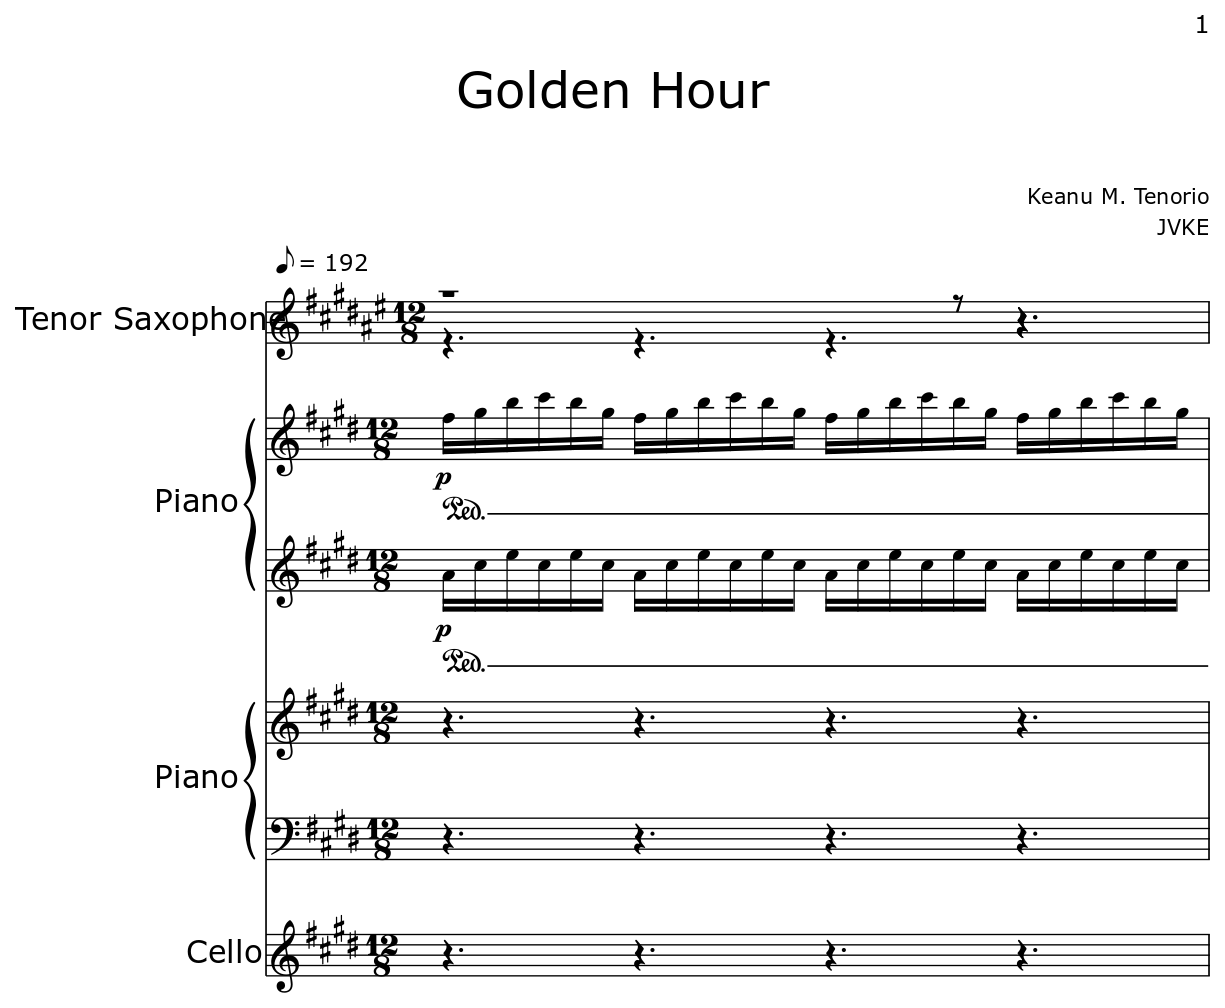 Golden Hour - Sheet music for Tenor Saxophone, Piano, Cello